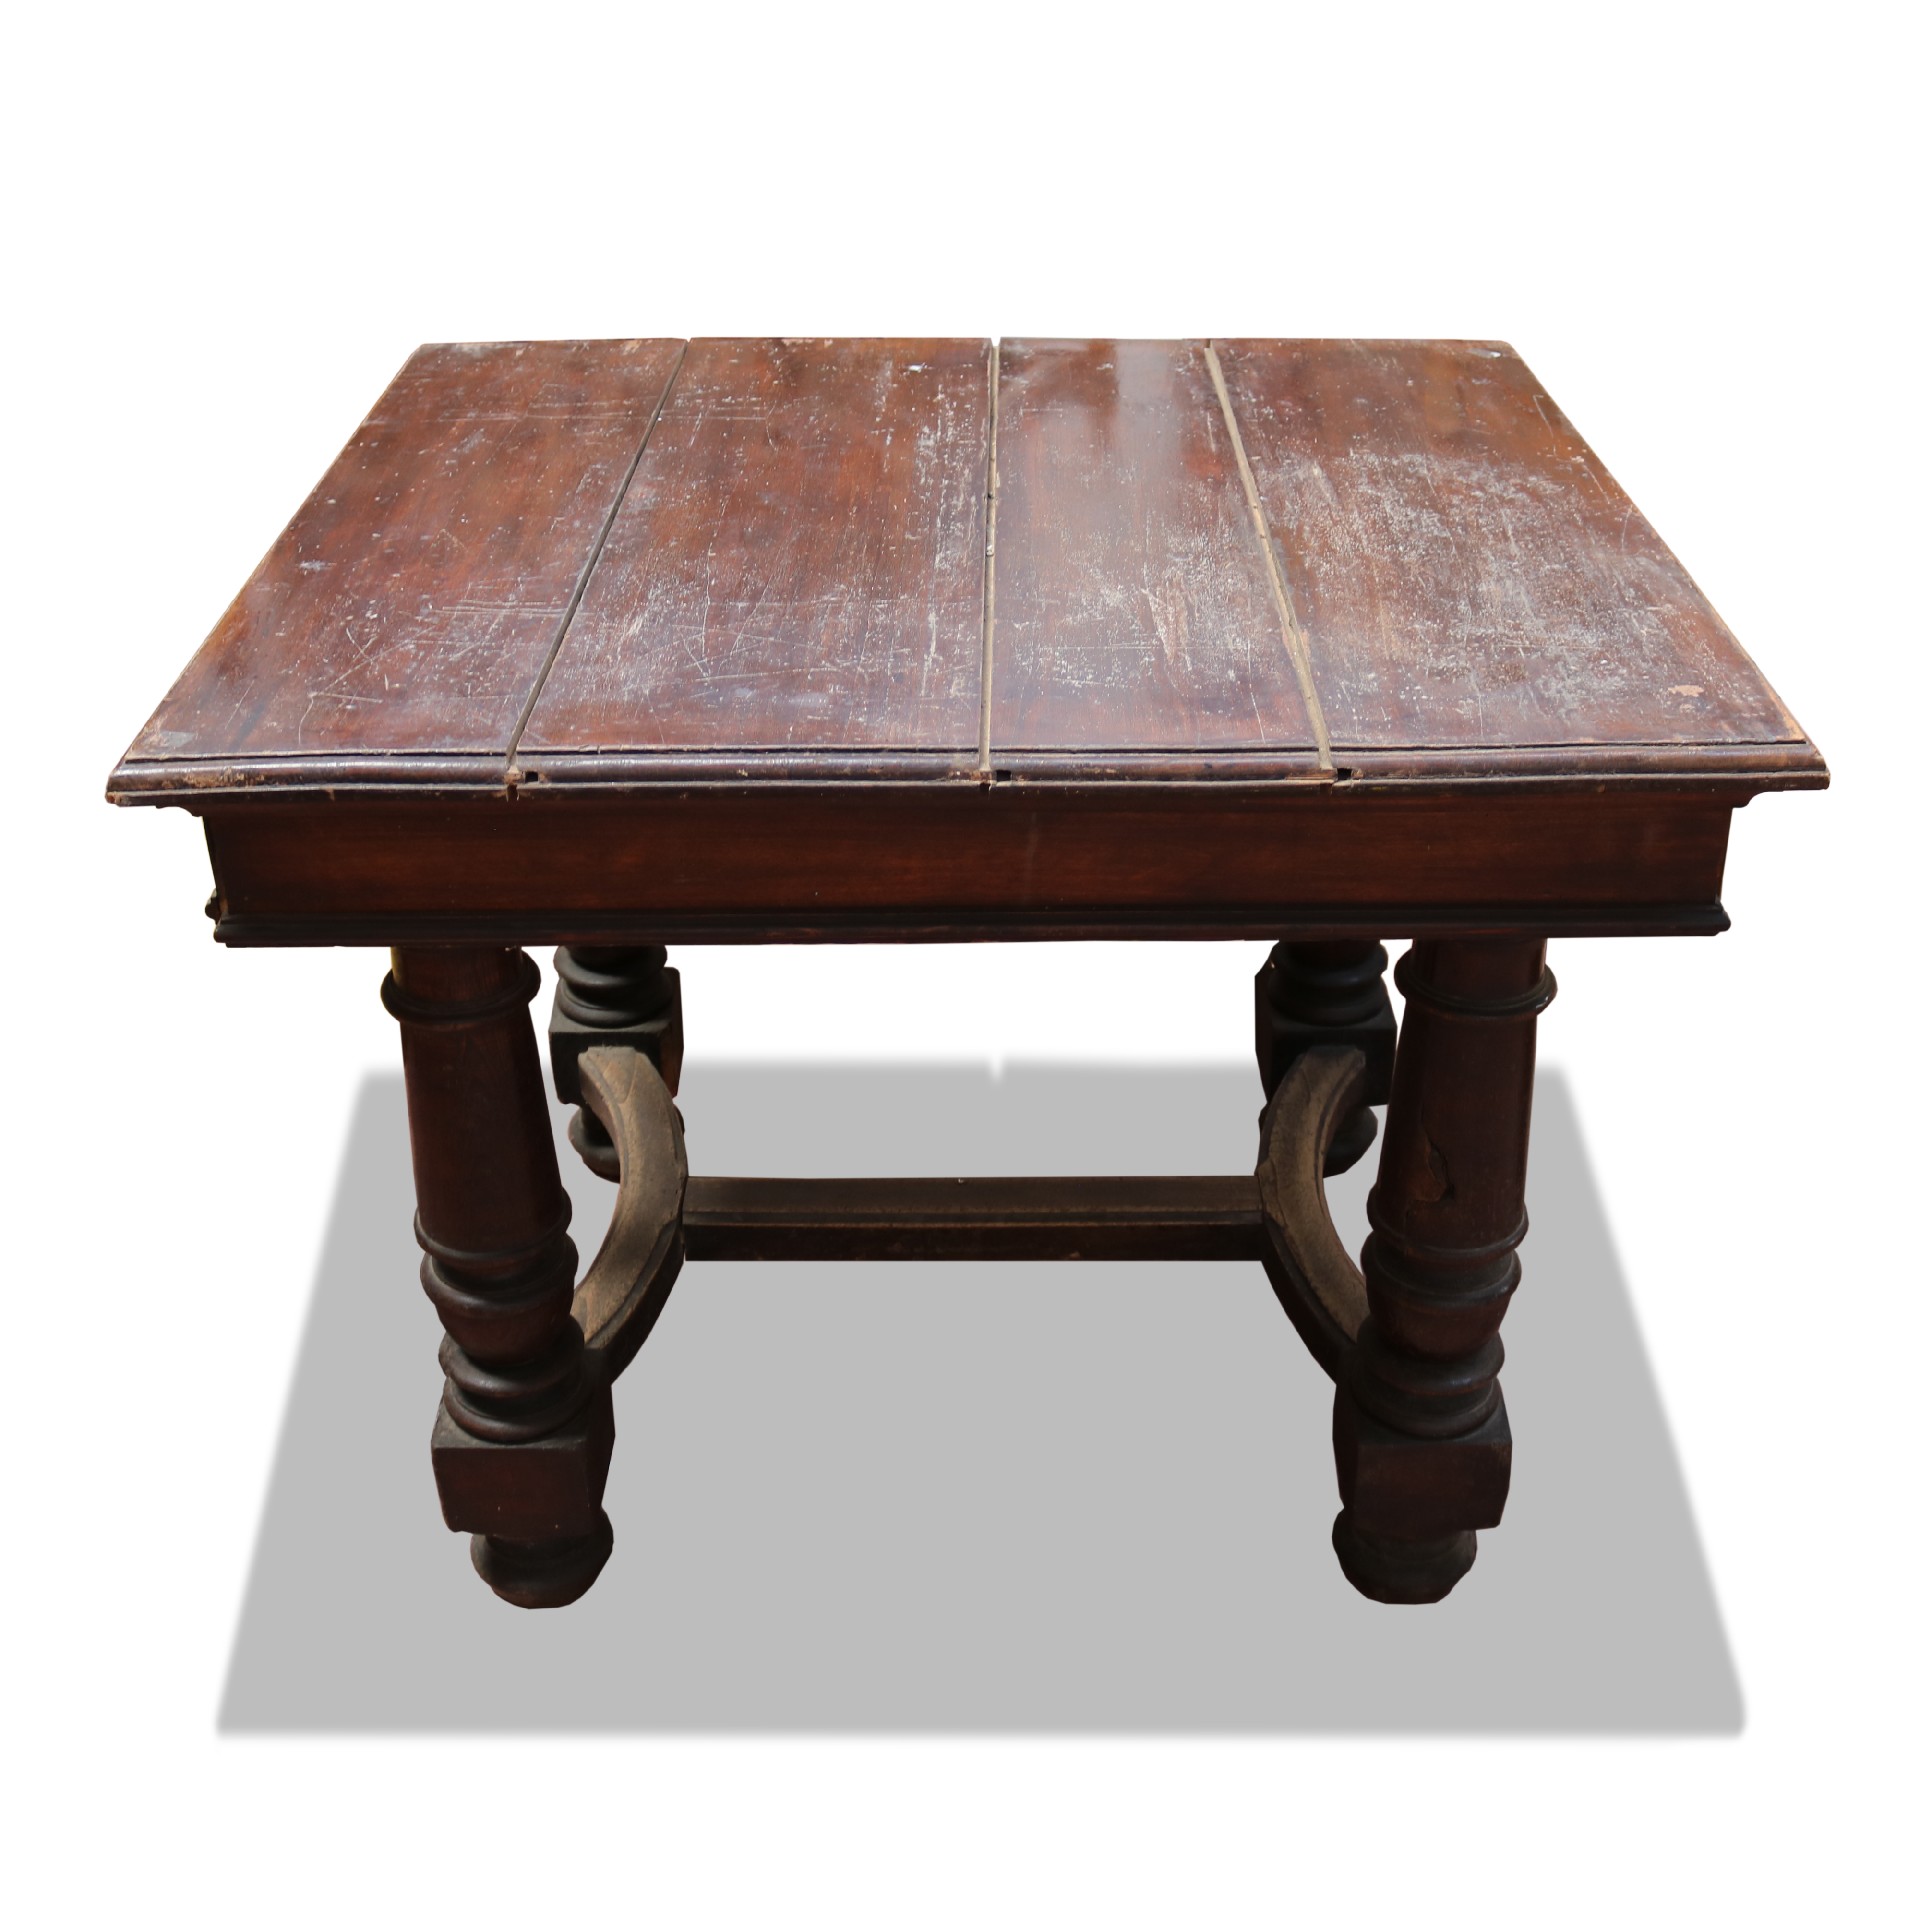 Tavolo in legno allungabile. - Tavoli in legno - Tavoli e complementi - Prodotti - Antichità Fiorillo